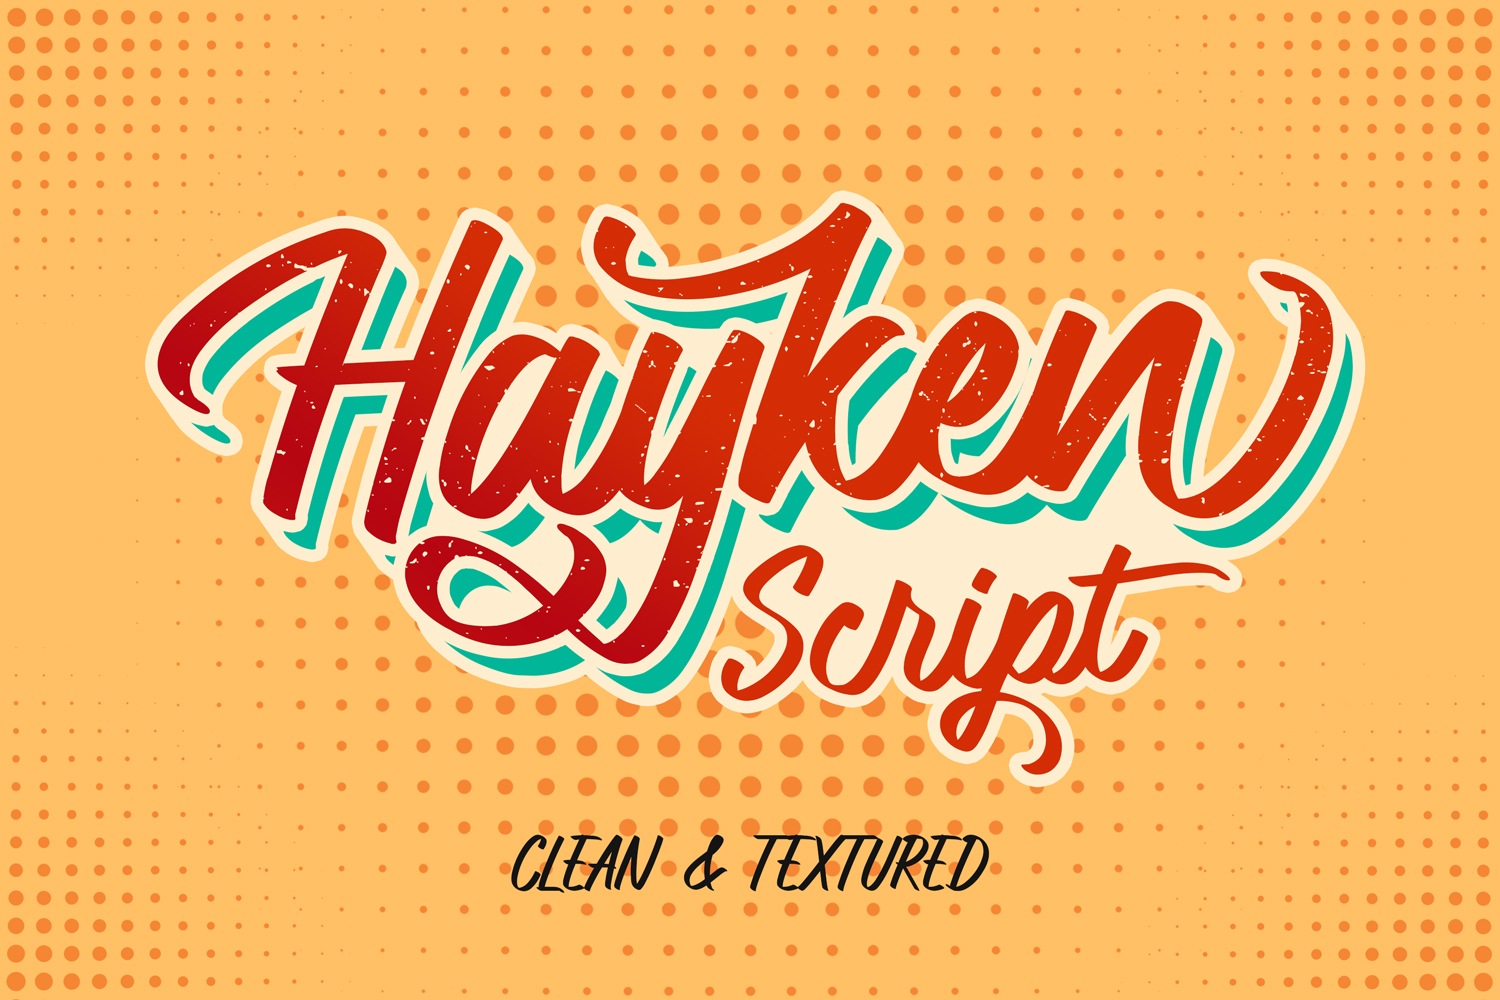 Hayken Script Free Font